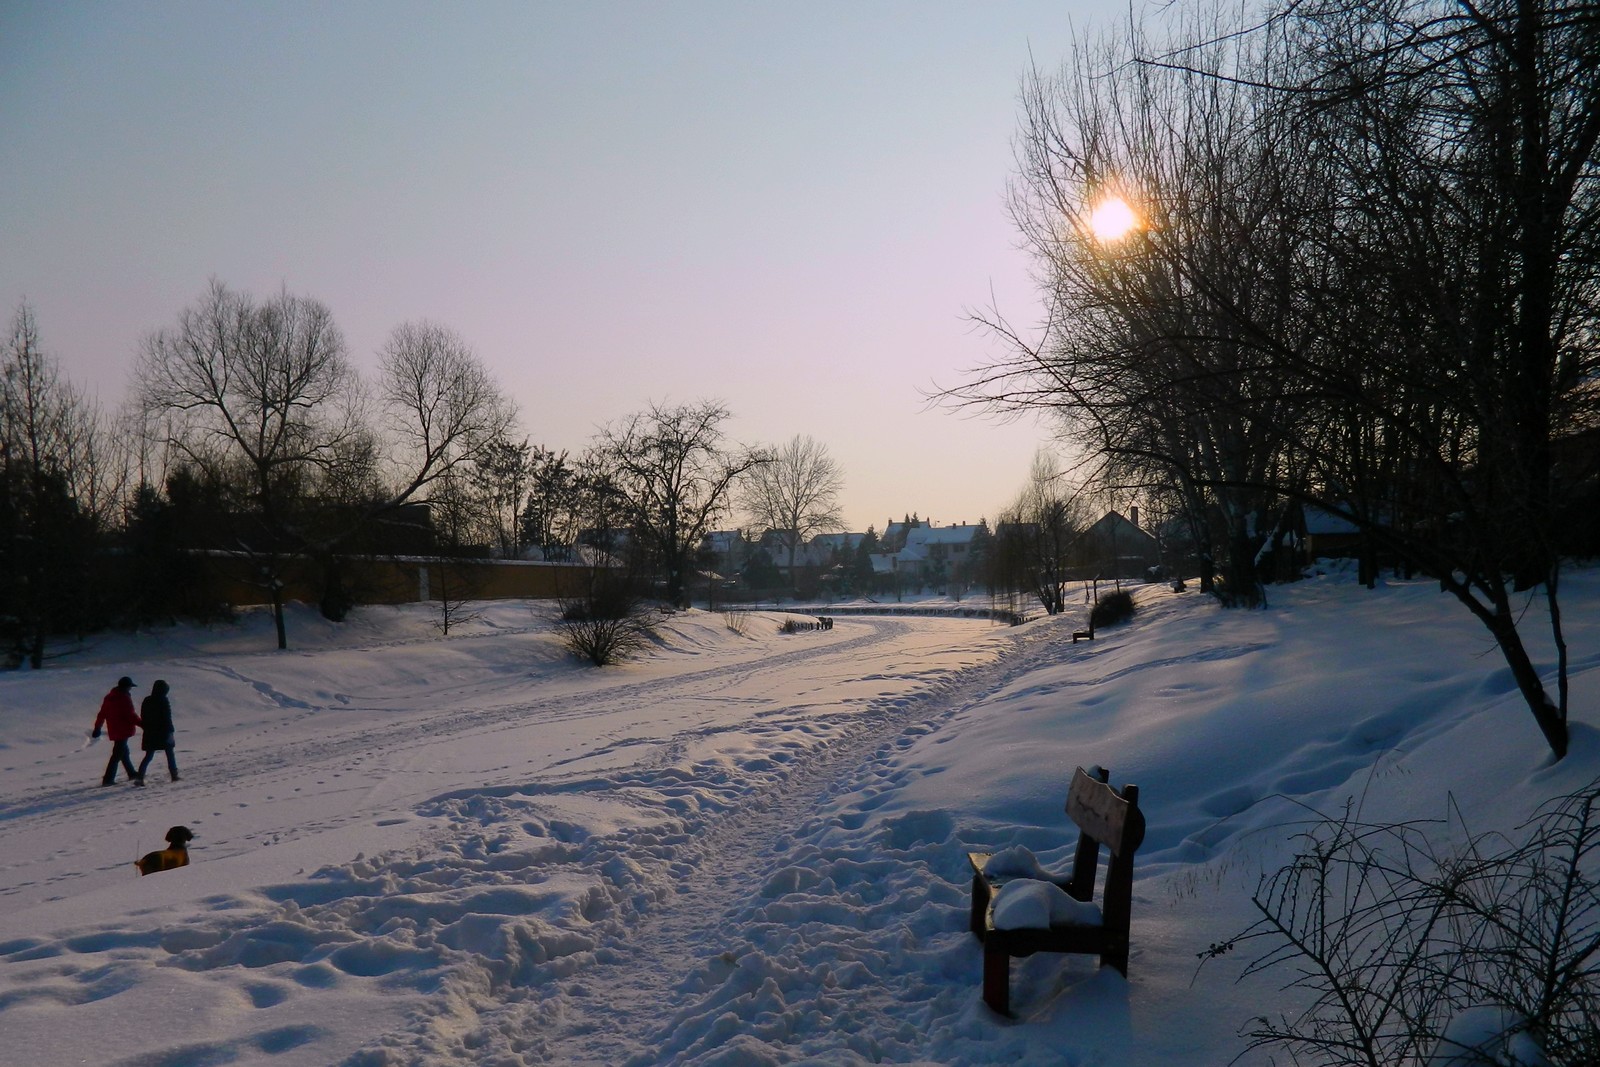 Spaziergang auf dem gefrorenen Fluss